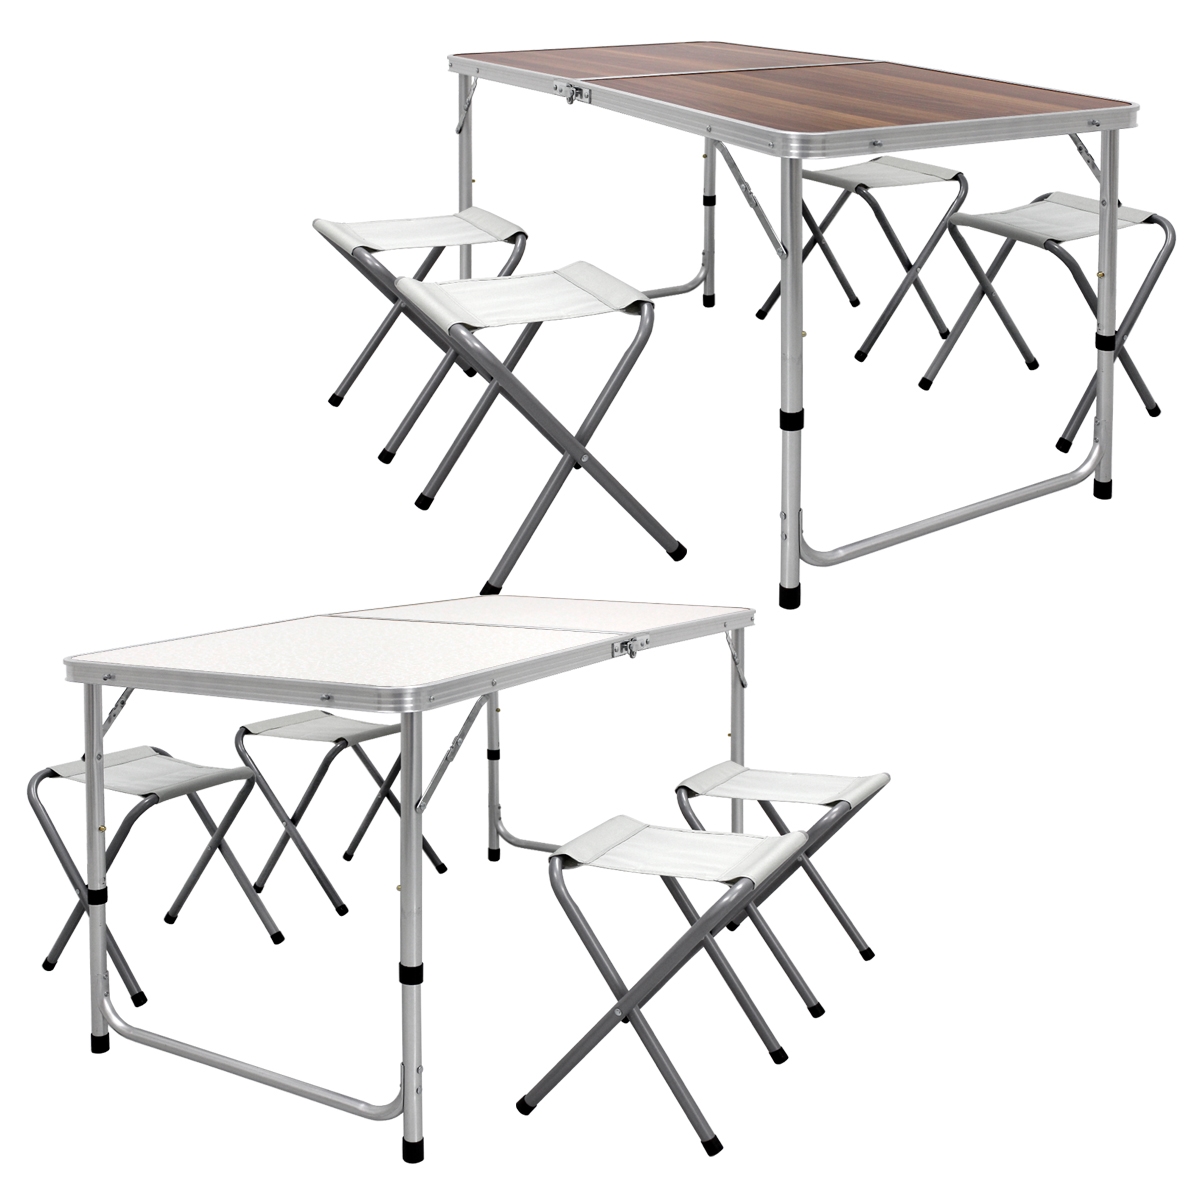 Campingtisch Klapptisch Gartentisch Tisch mit 4 Hocker Aluminium 120cm Holzdekor 